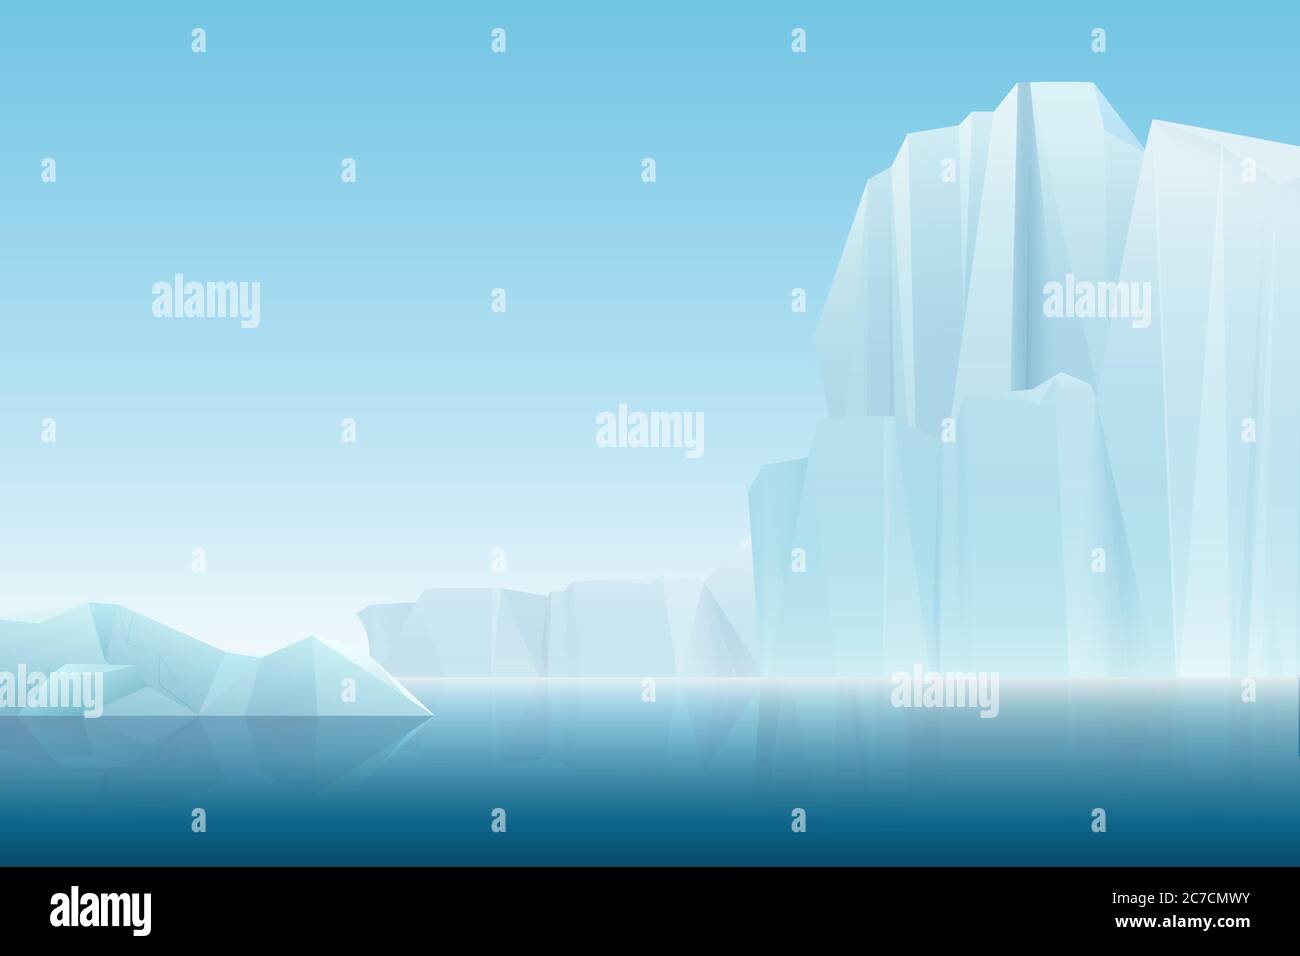 Brouillard doux réaliste montagnes de glace de l'iceberg arctique avec mer bleue, paysage d'hiver. Illustration de fond de la nature vectorielle Illustration de Vecteur